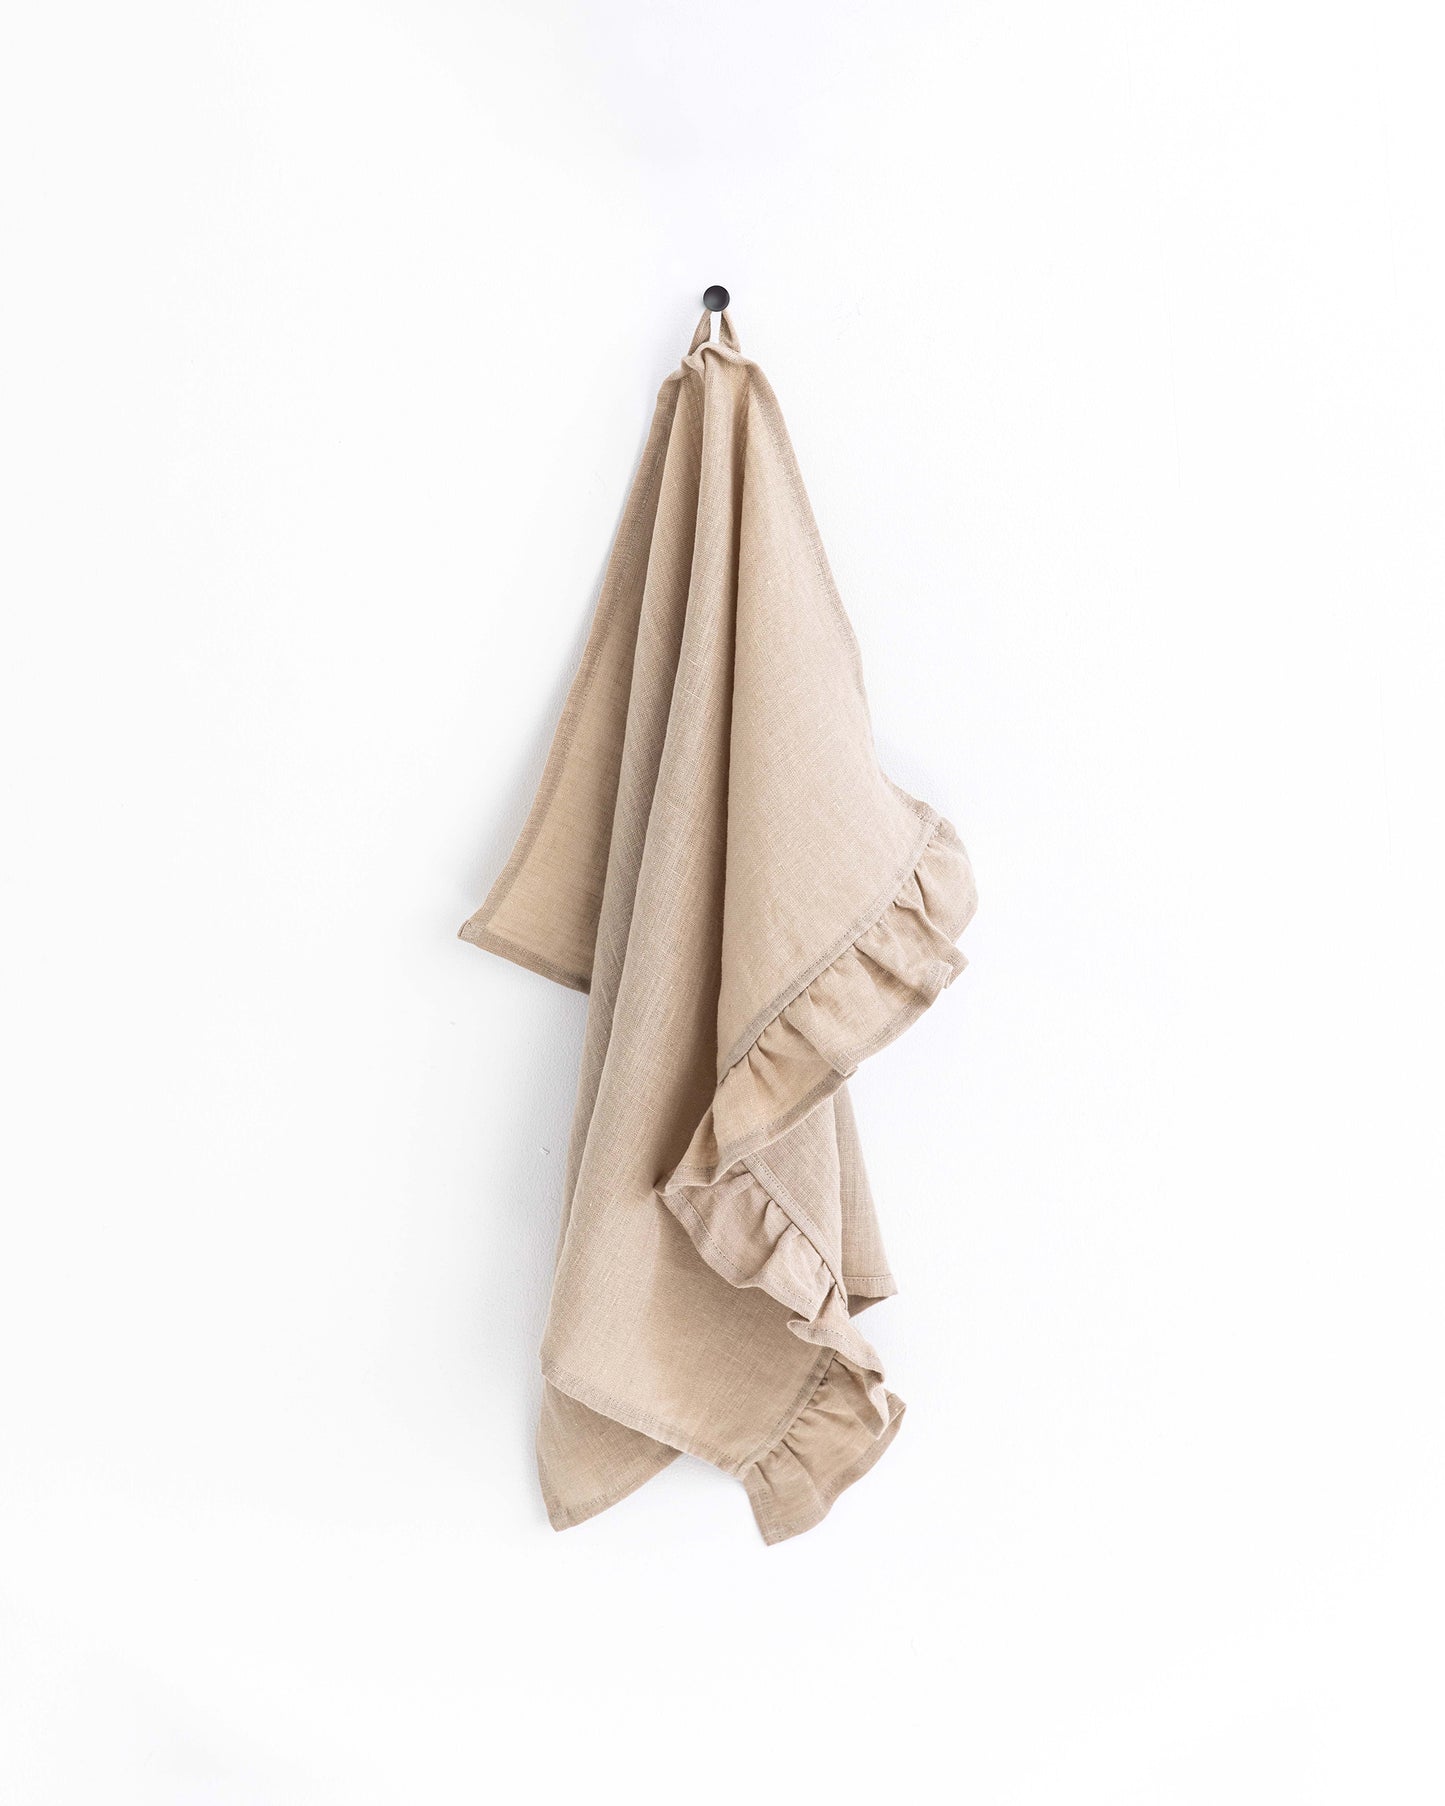 Ruffle trim linen tea towel in Natural linen - MagicLinen